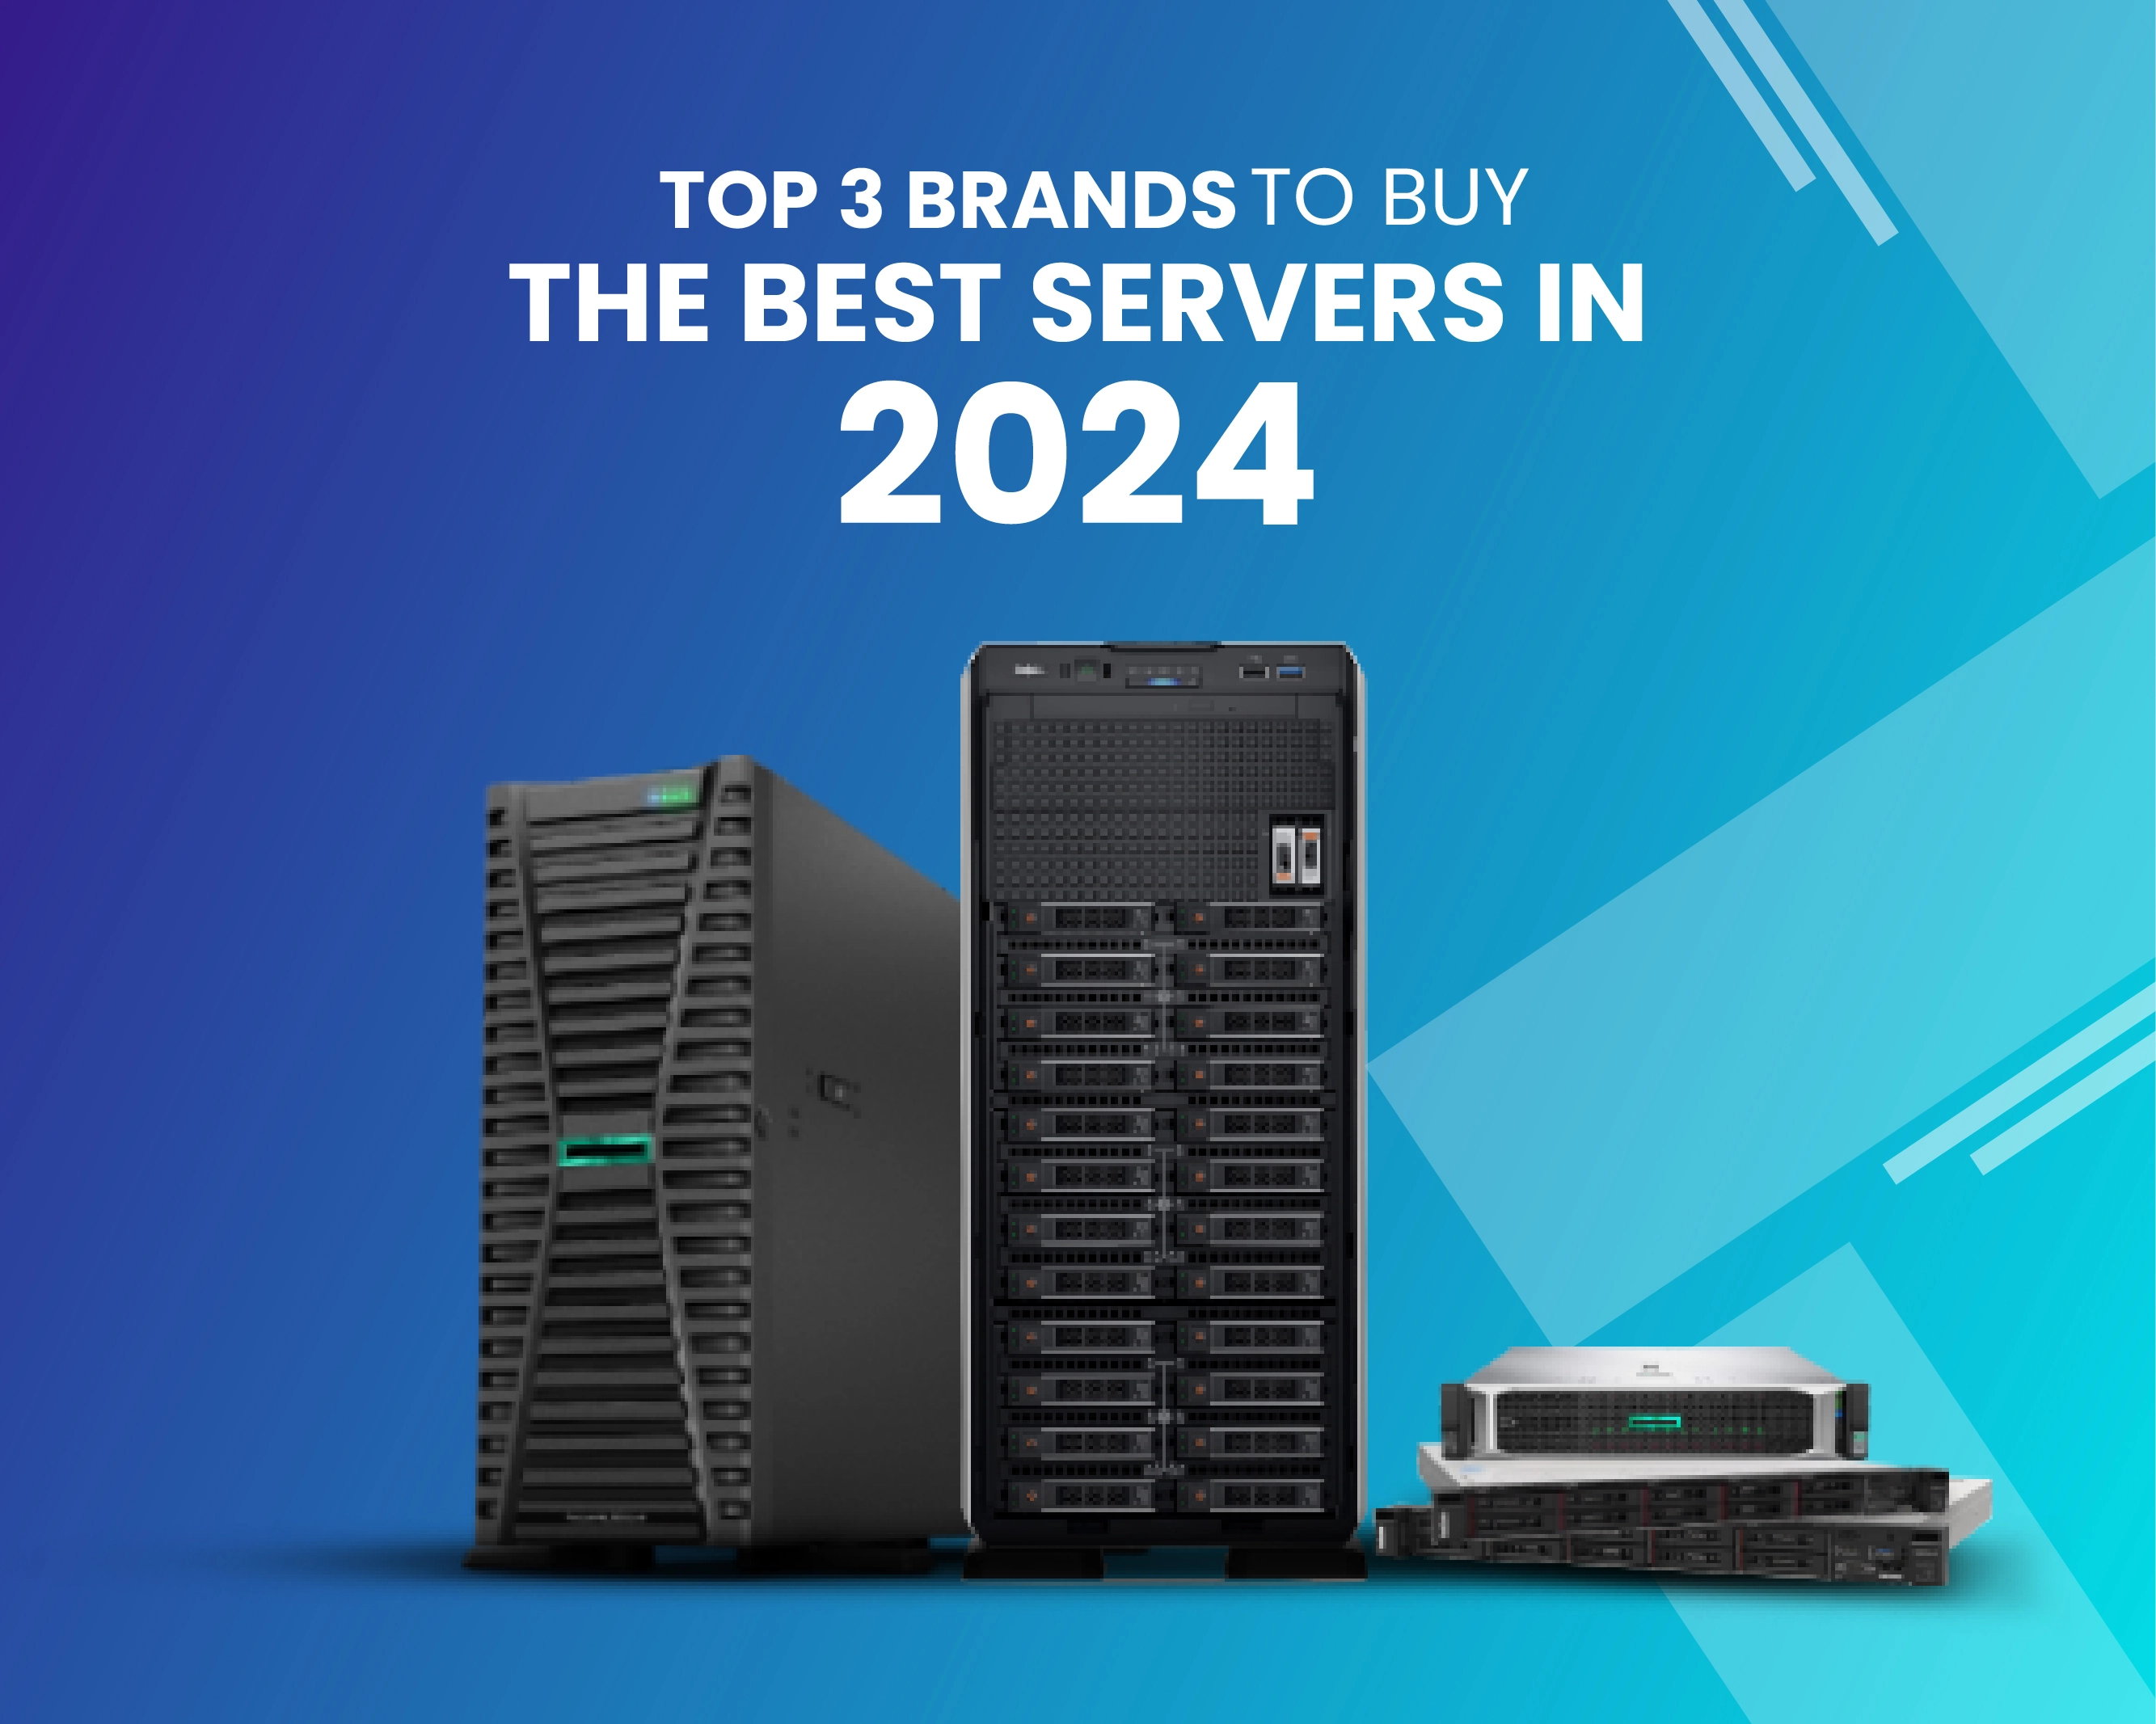 Top 3 Brands to Buy the Best Servers in 2024